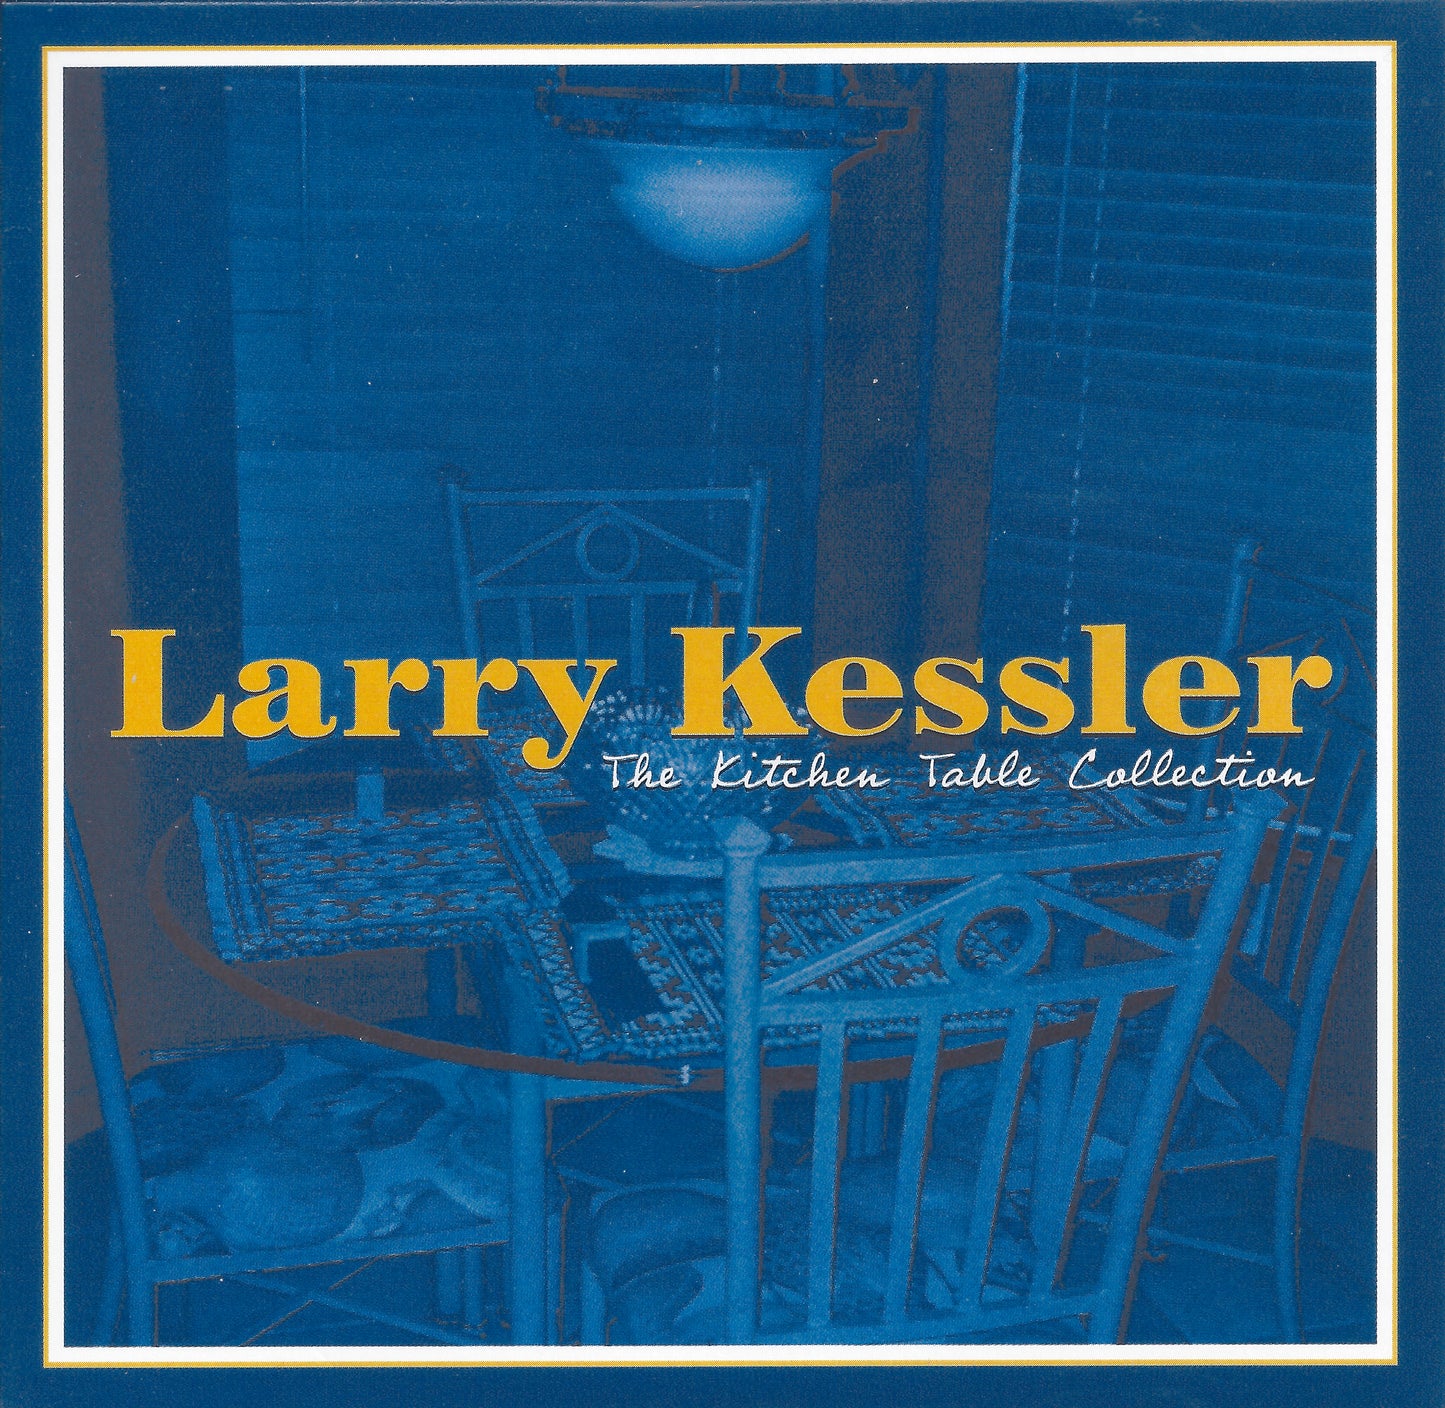 Next Time -Larry Kessler